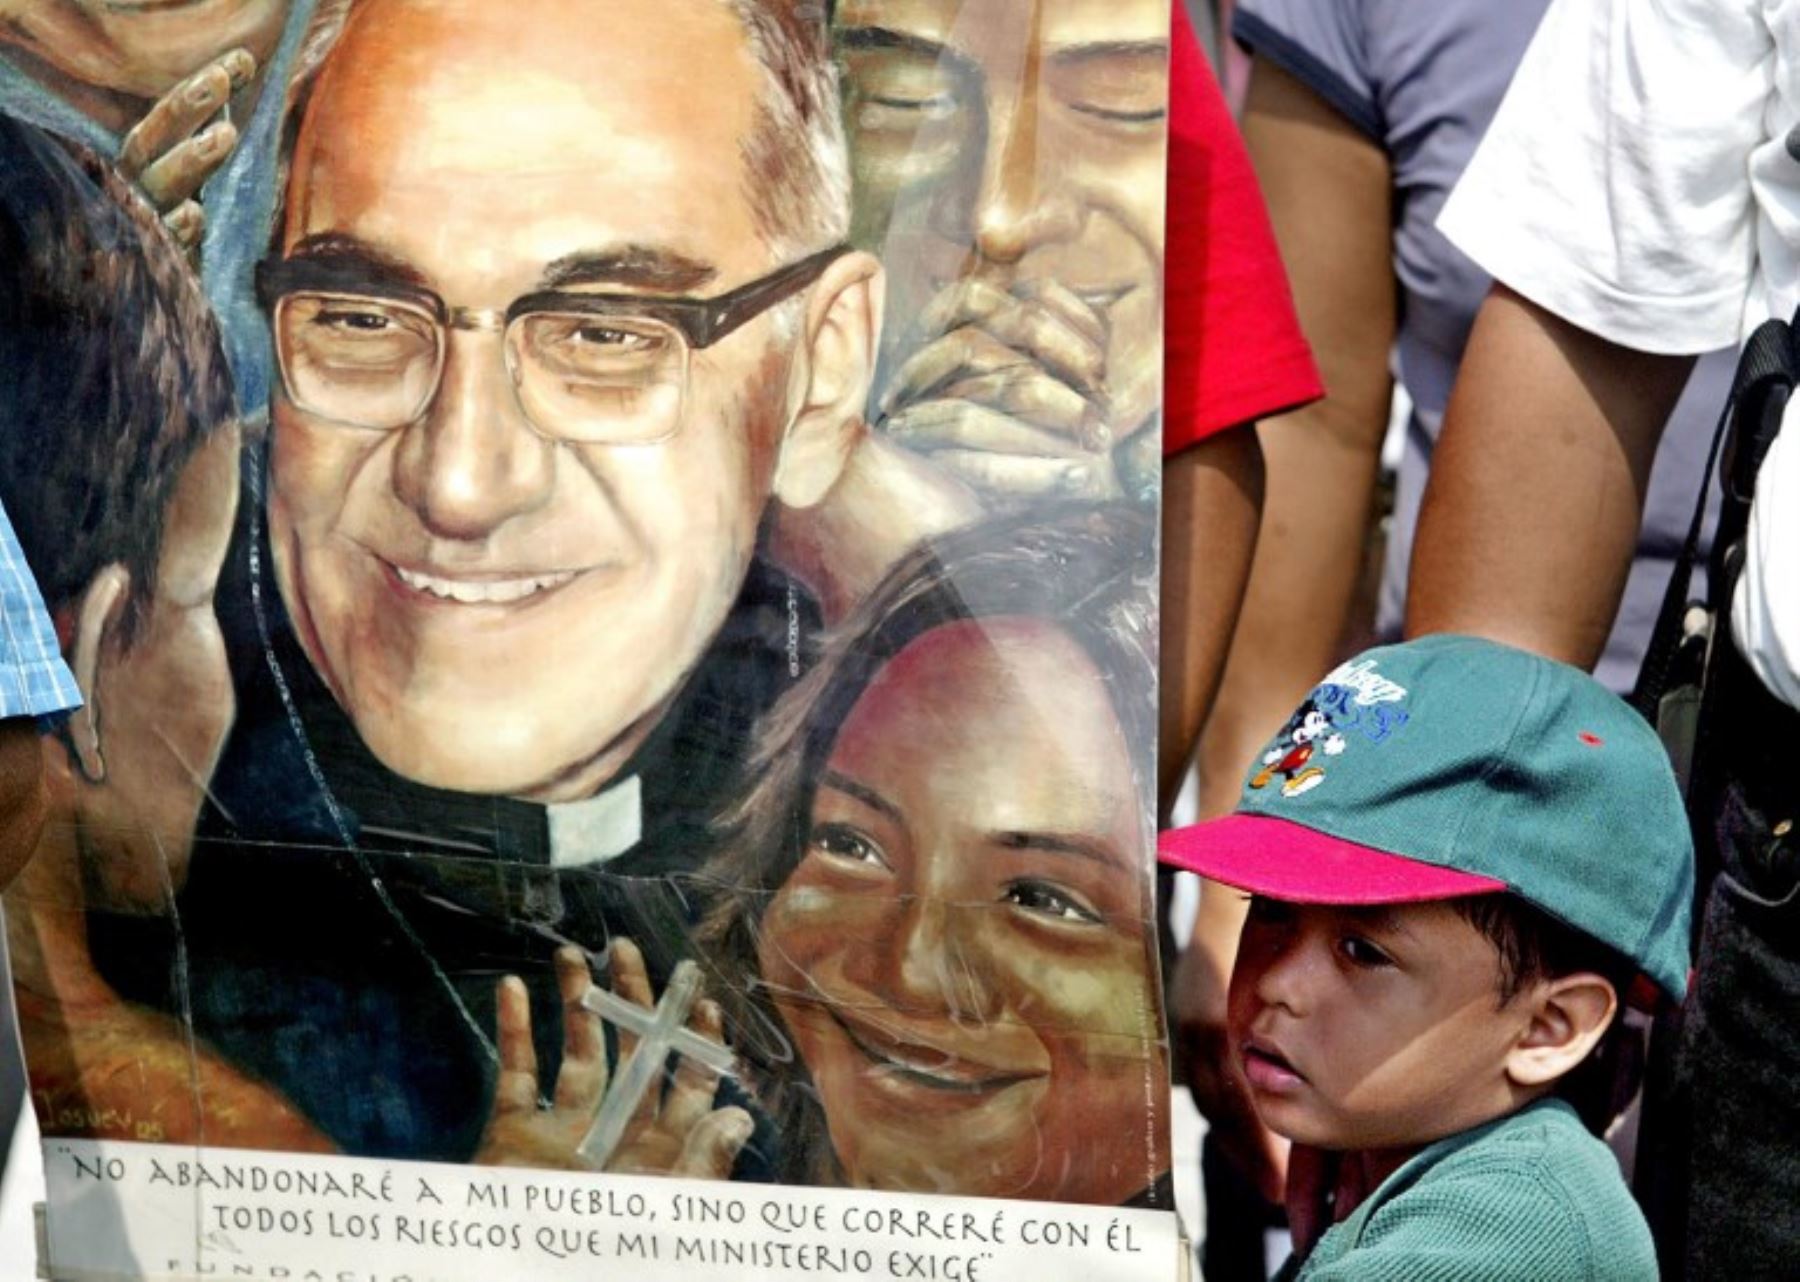 Un niño junto a sus padres católicos, participa en un acto religioso frente a un monumento del asesinado Arzobispo Oscar Arnulfo Romero.Foto:AFP